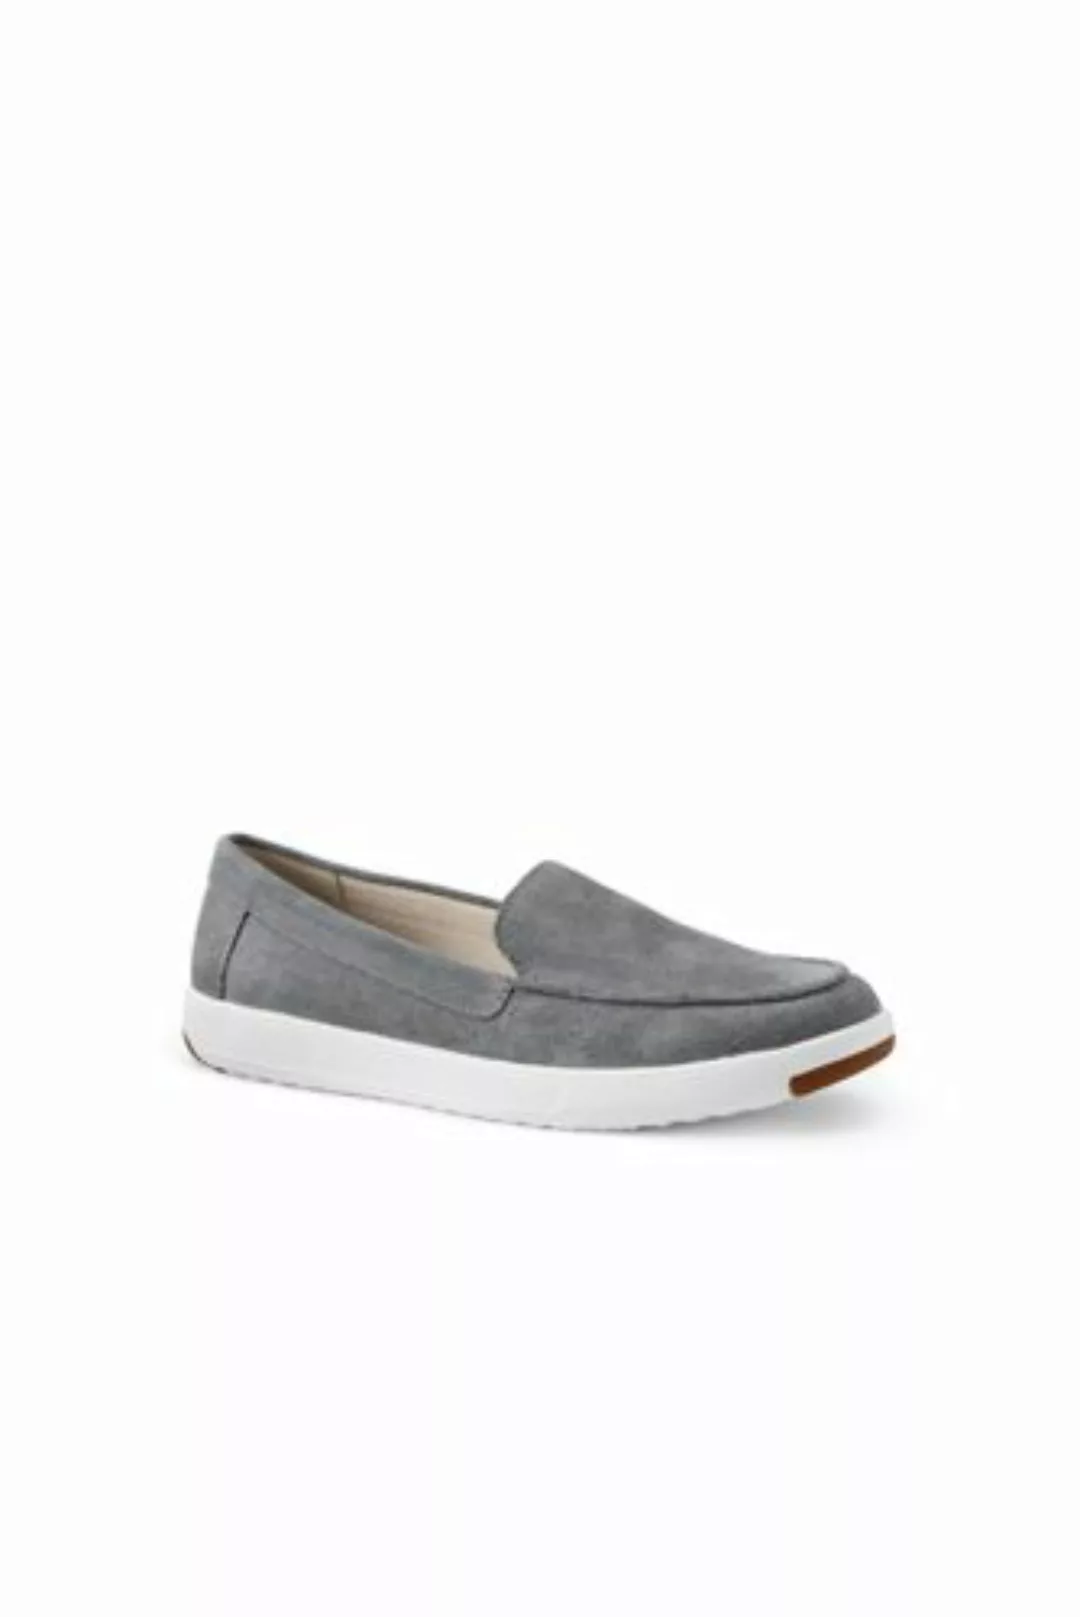 Federleichte Komfort-Loafer, Damen, Größe: 40 Normal, Grau, Rauleder, by La günstig online kaufen